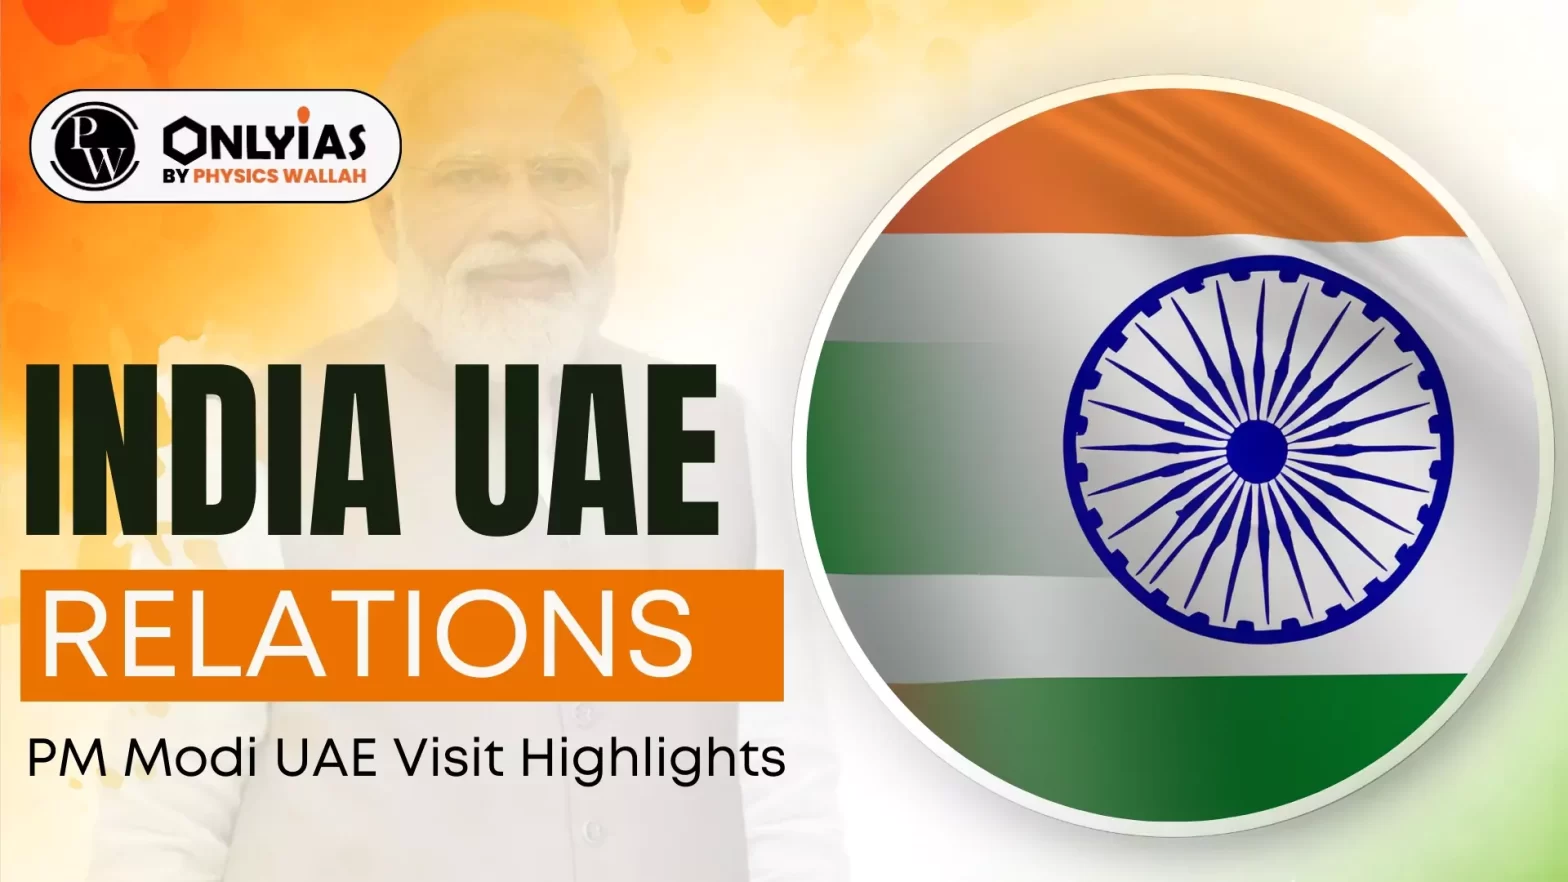 India UAE Relations: PM Modi UAE Visit Highlights